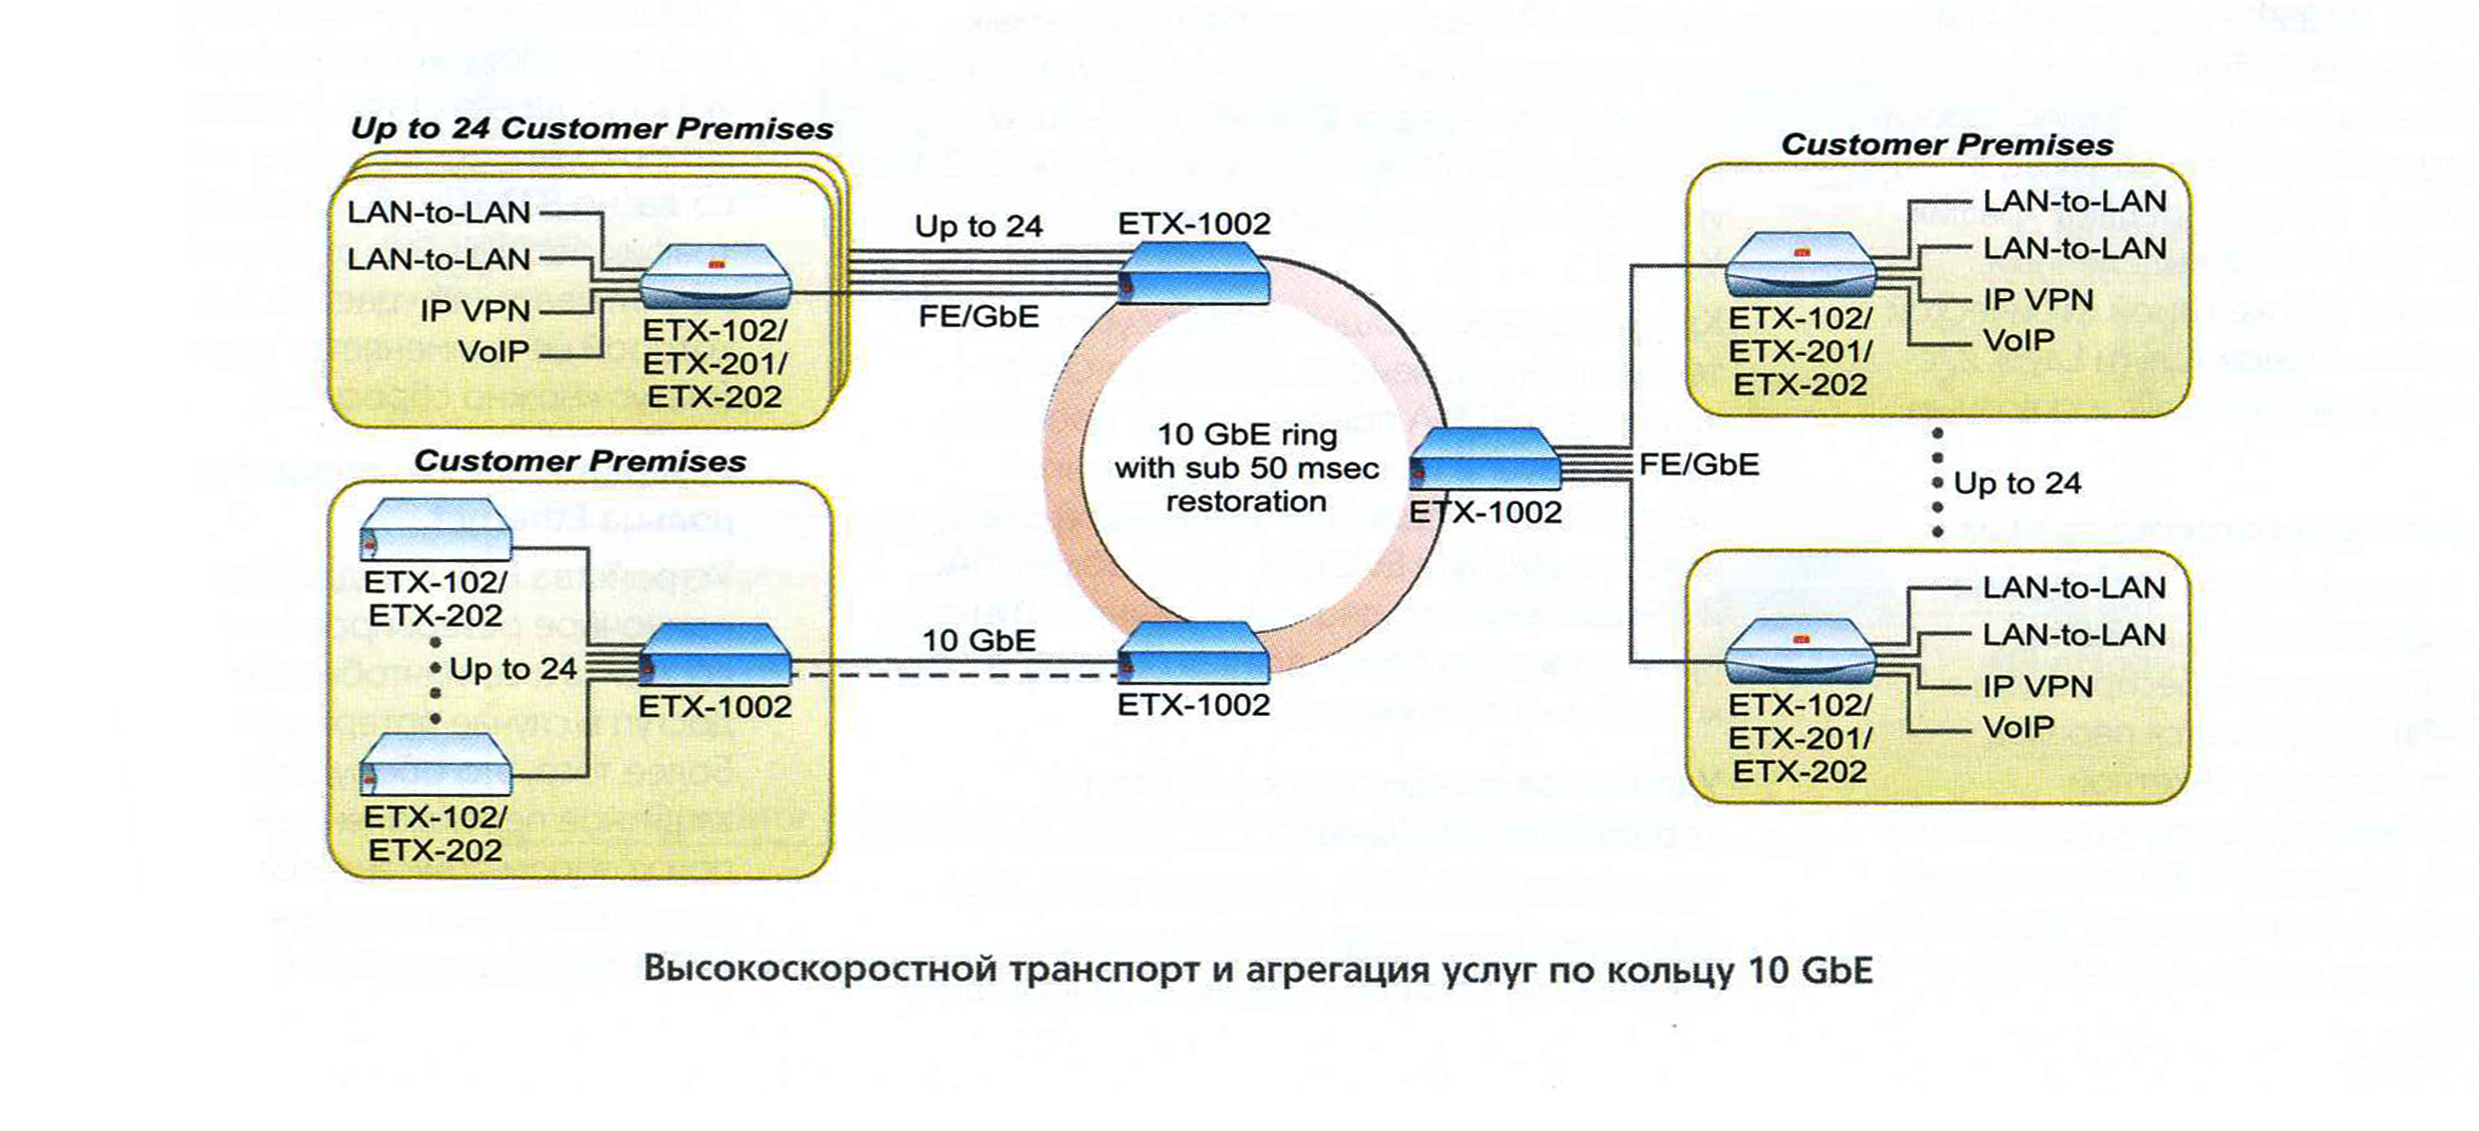 ETX-1002 в сети